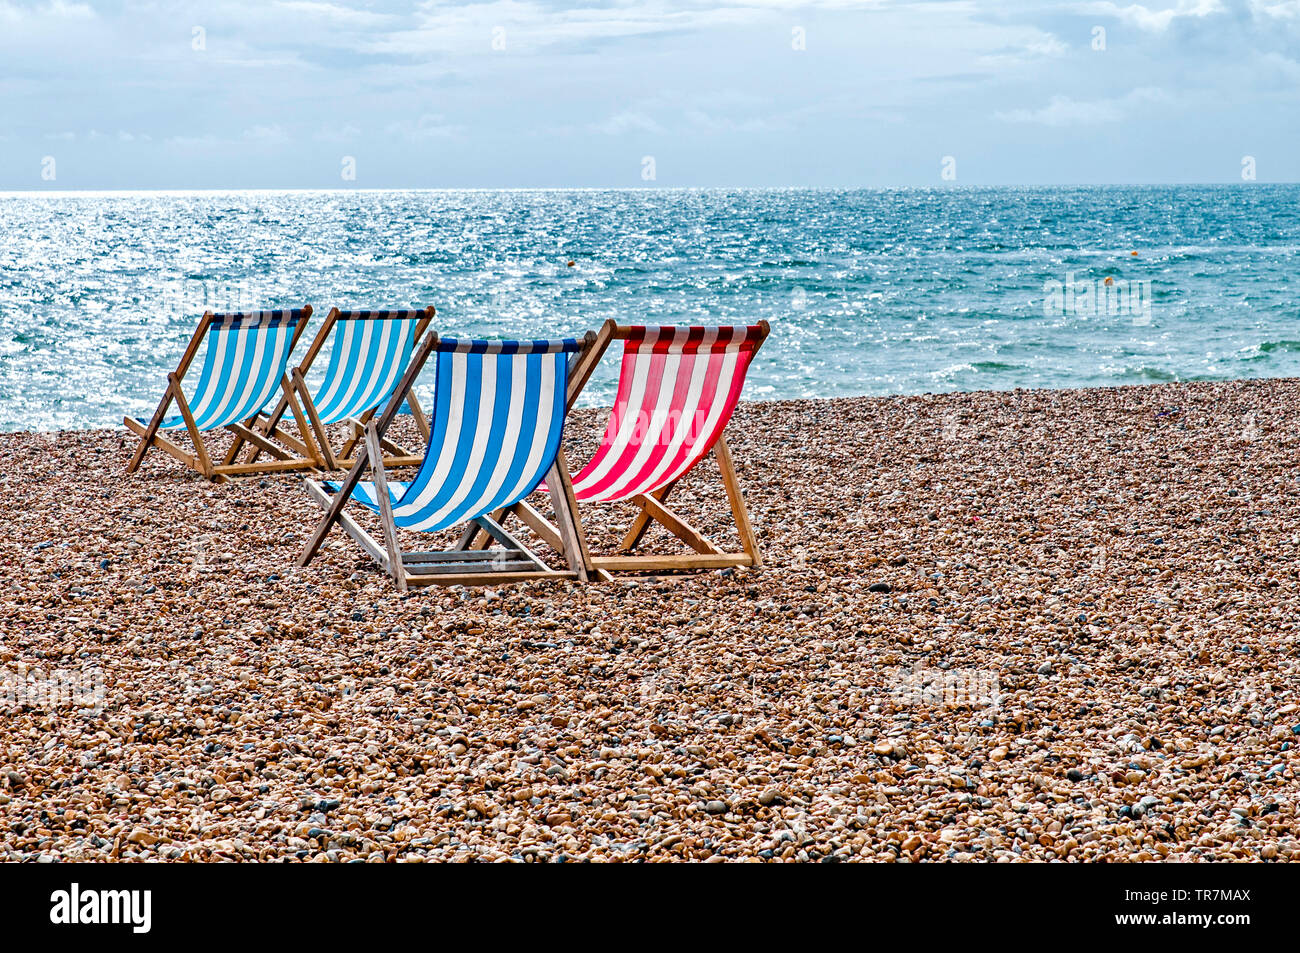 Brighton (England): Deckchairs on the beach;  Liegestühle am Strand in Brighton Stock Photo